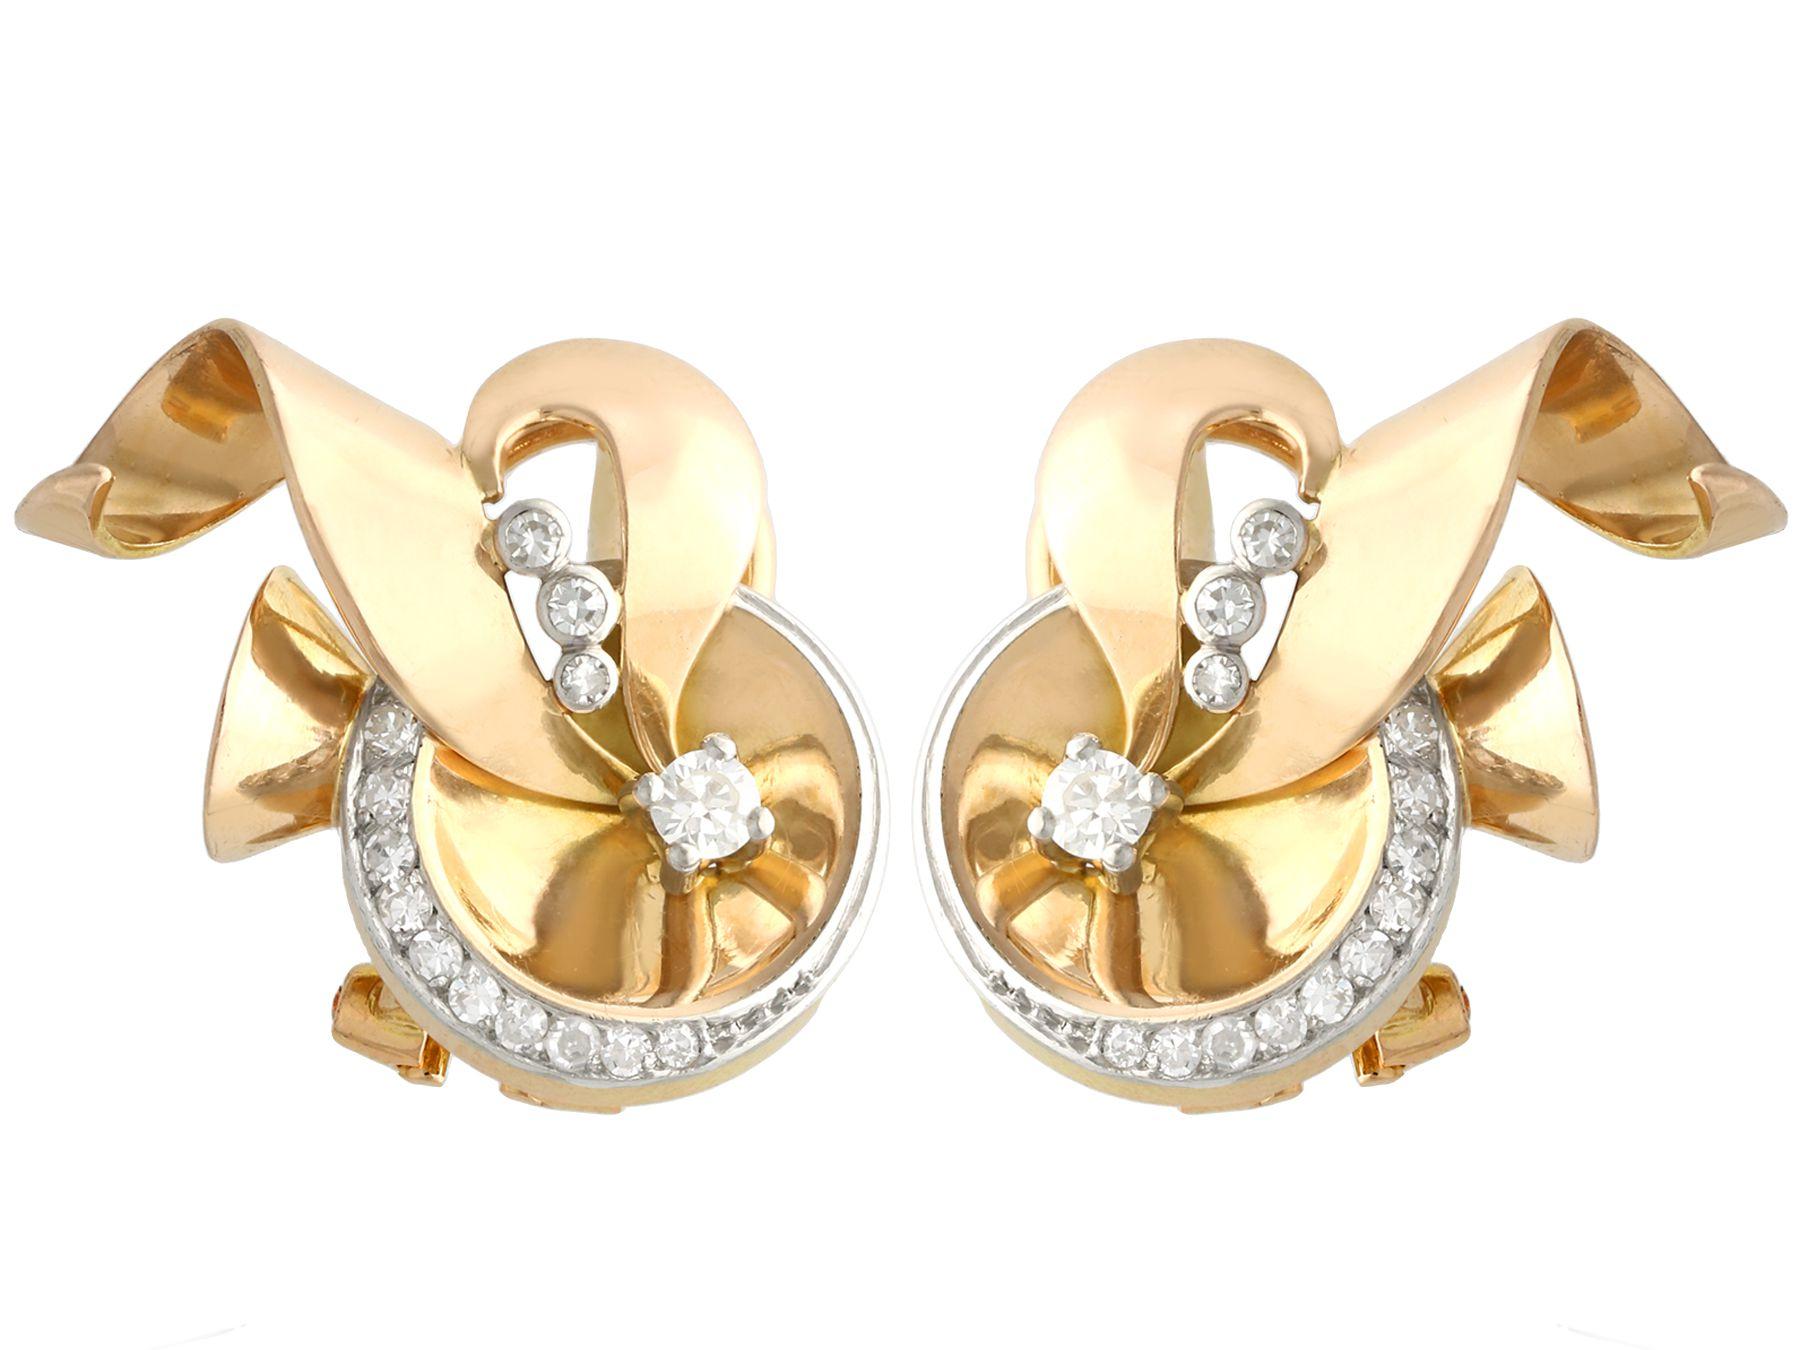 Ein feines und beeindruckendes Paar Vintage-Ohrringe aus den 1940er Jahren mit 0,44 Karat Diamanten und 18 Karat Gelbgold; Teil unserer vielfältigen Vintage-Schmuck- und Nachlassschmuckkollektionen.

Diese feinen und beeindruckenden Vintage-Ohrringe